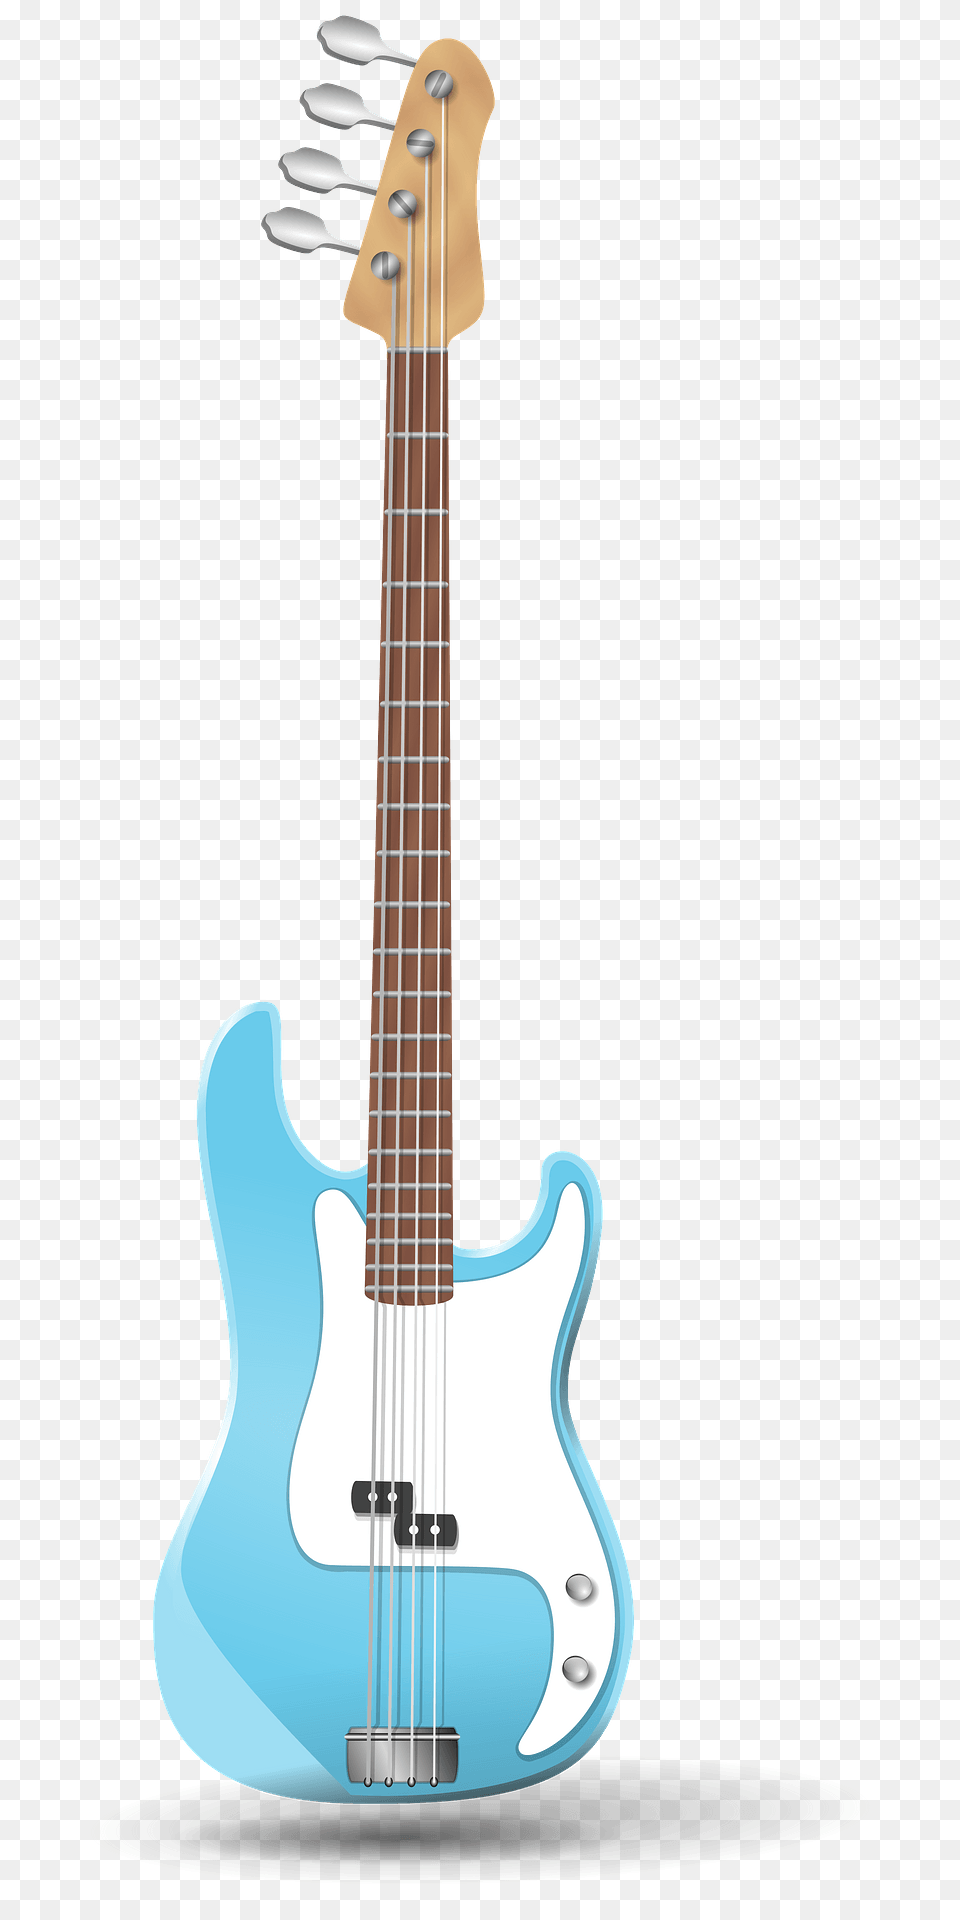 Blue Bass Guitar Clipart, Bass Guitar, Musical Instrument Png